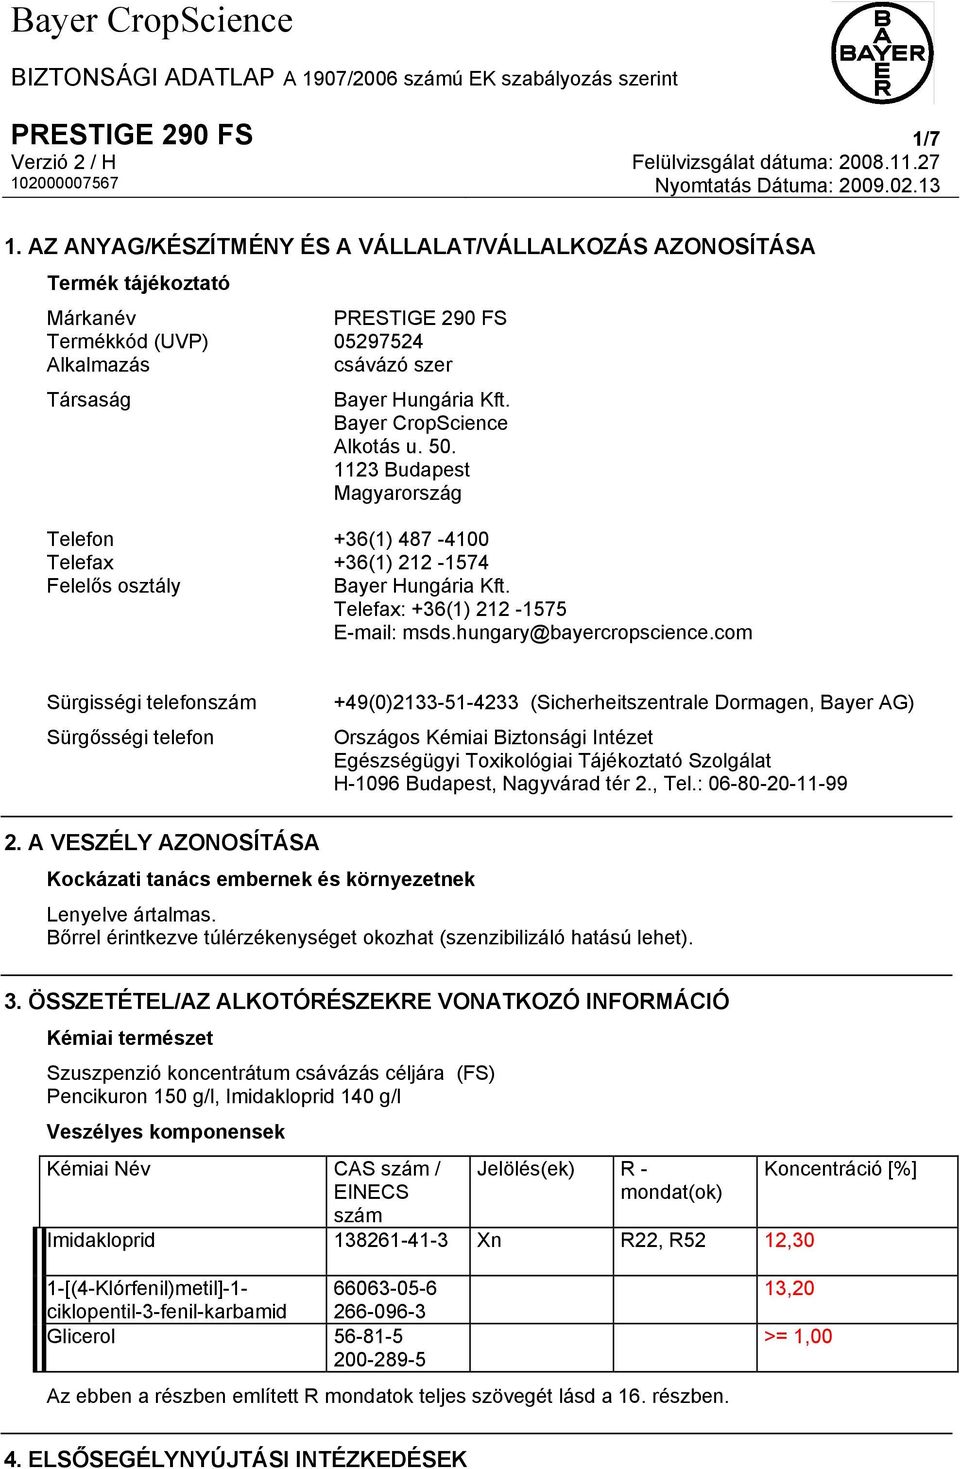 Bayer CropScience Alkotás u. 50. 1123 Budapest Magyarország Telefon +36(1) 487-4100 Telefax +36(1) 212-1574 Felelős osztály Bayer Hungária Kft. Telefax: +36(1) 212-1575 E-mail: msds.